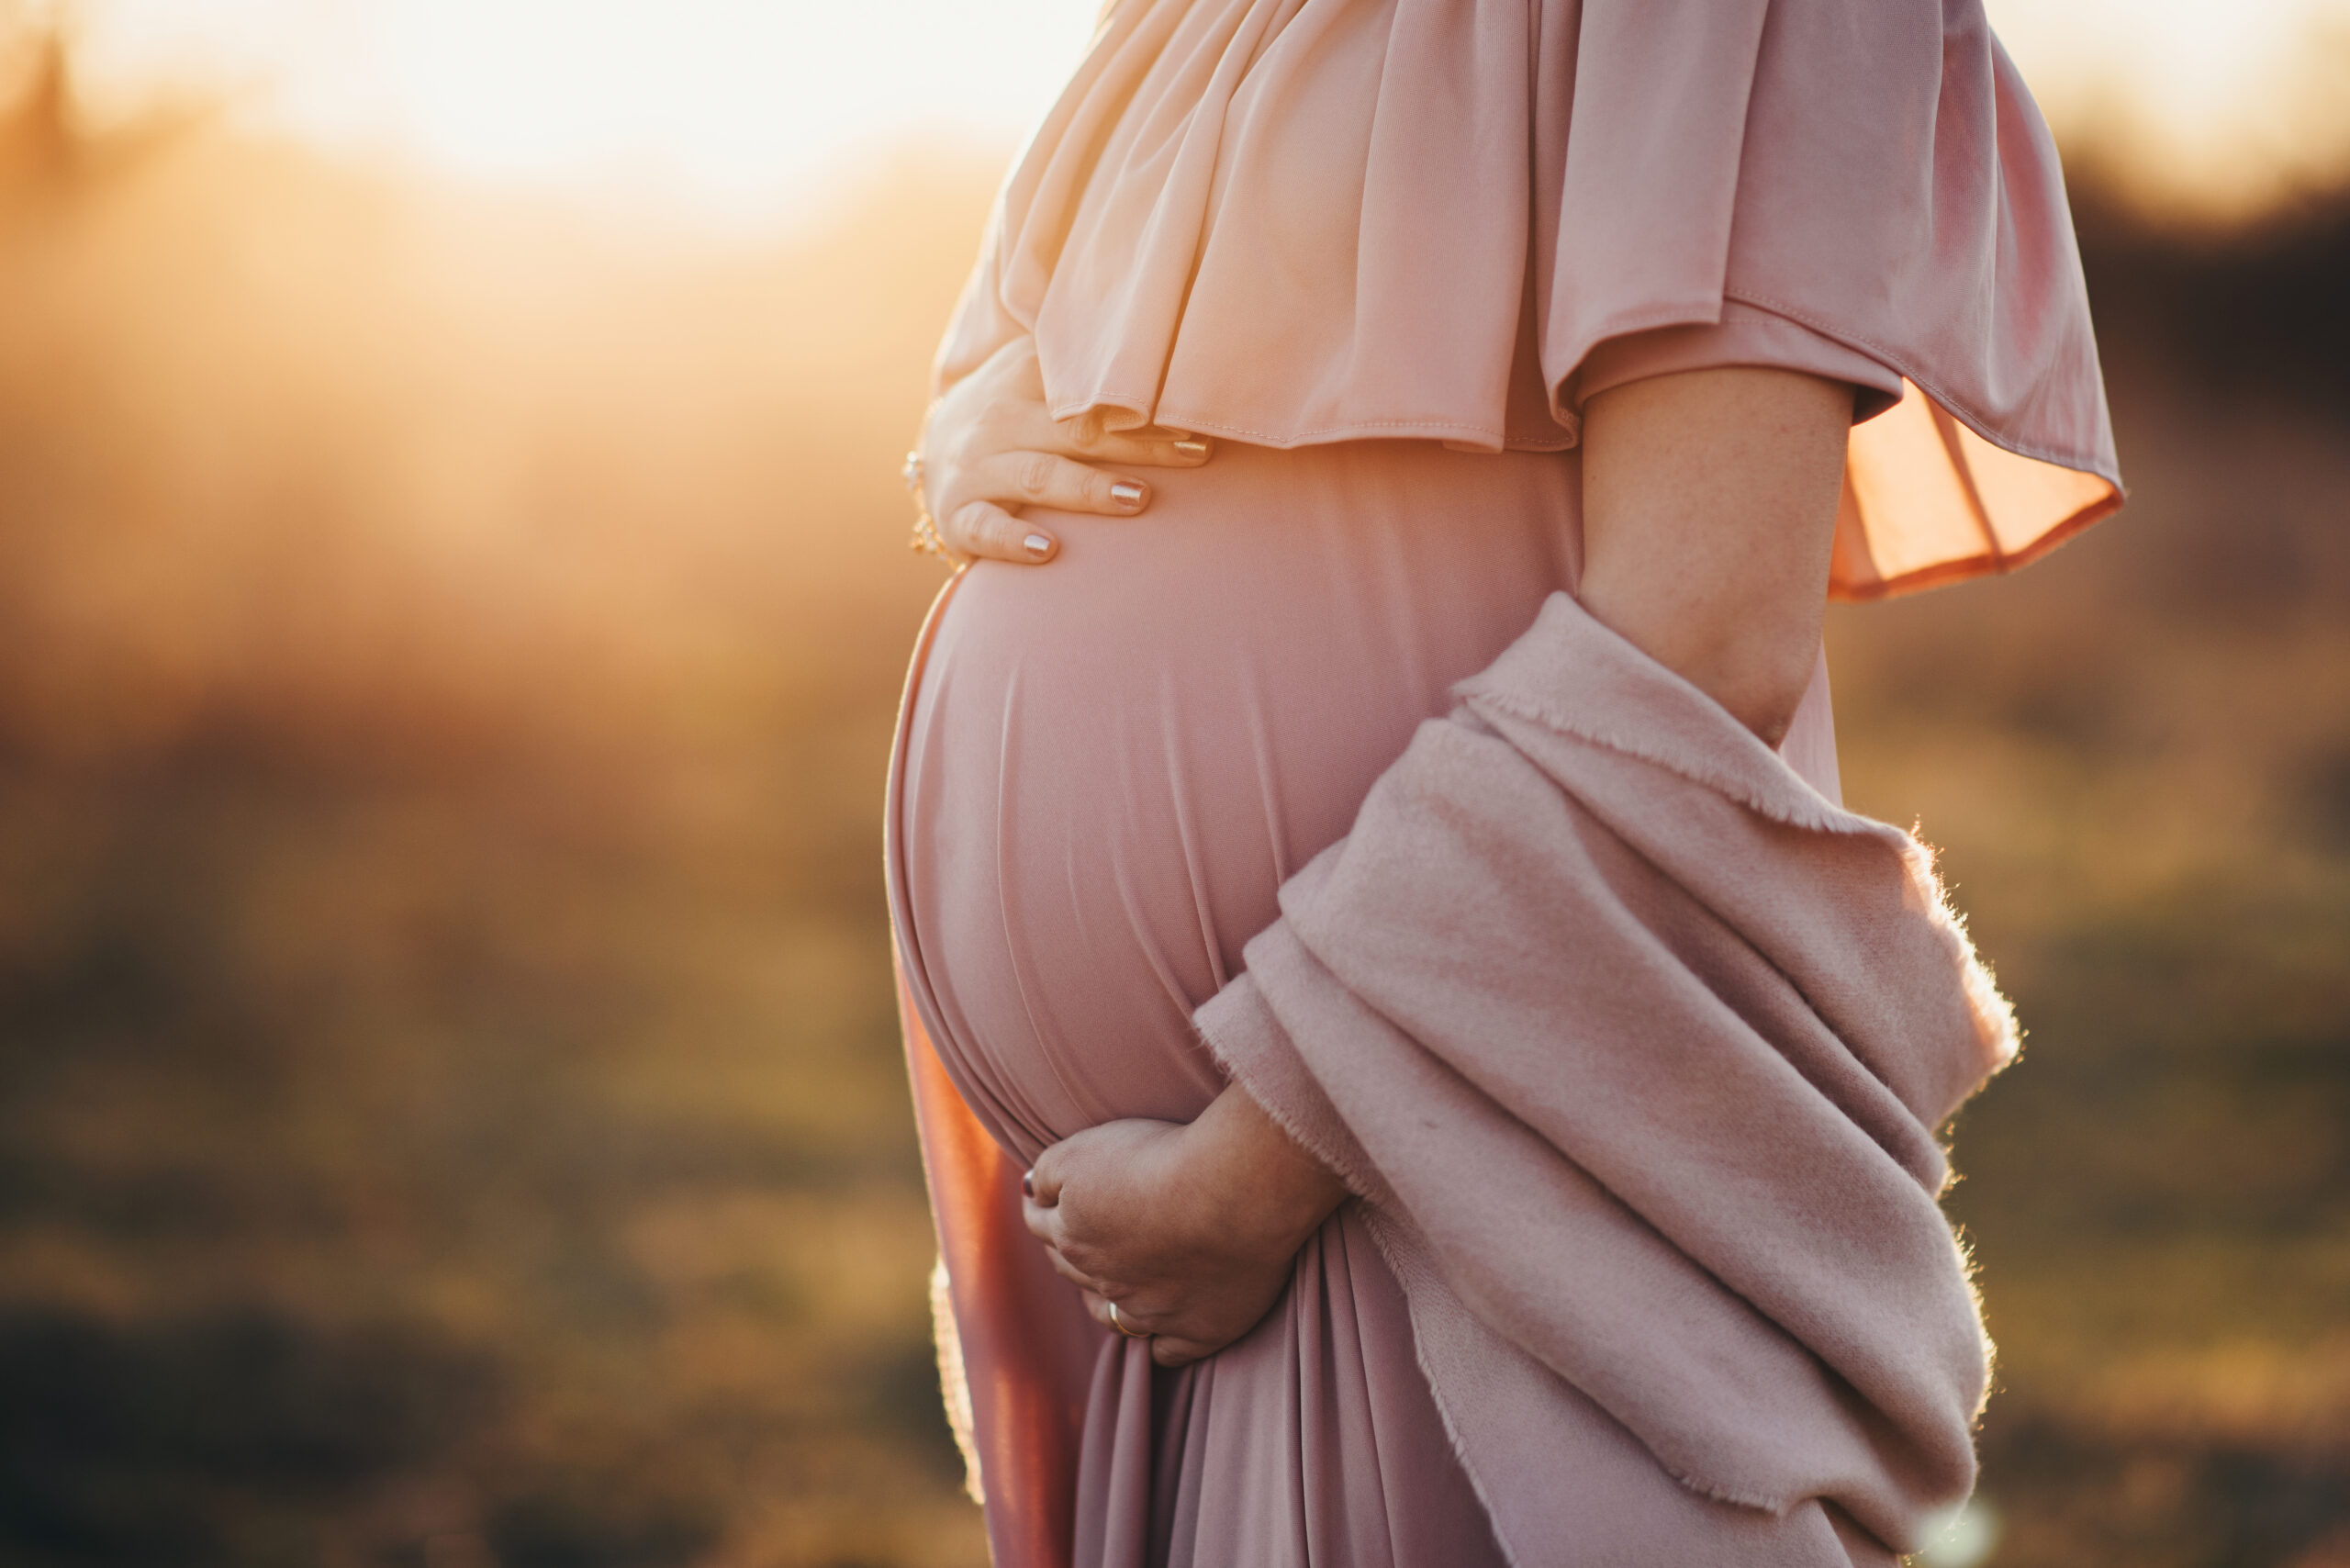 Chicago Pregnancy, Birth, & Postpartum Resources